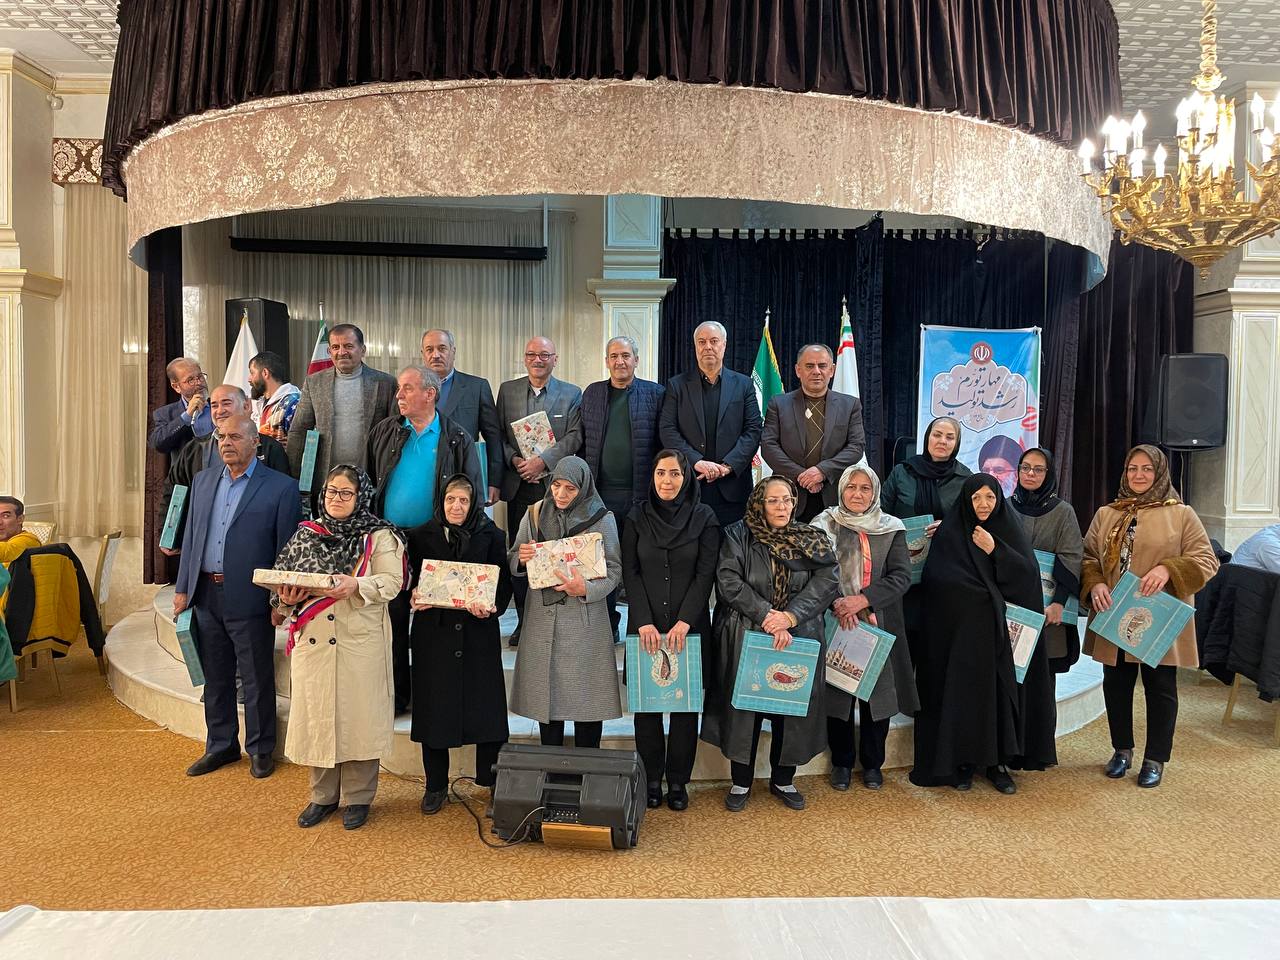 مراسم ضیافتی به مناسبت اعیاد شعبانیه با حضور ۶۰ عضو کانون به همراه خانواده در استان البرز برگزار شد.